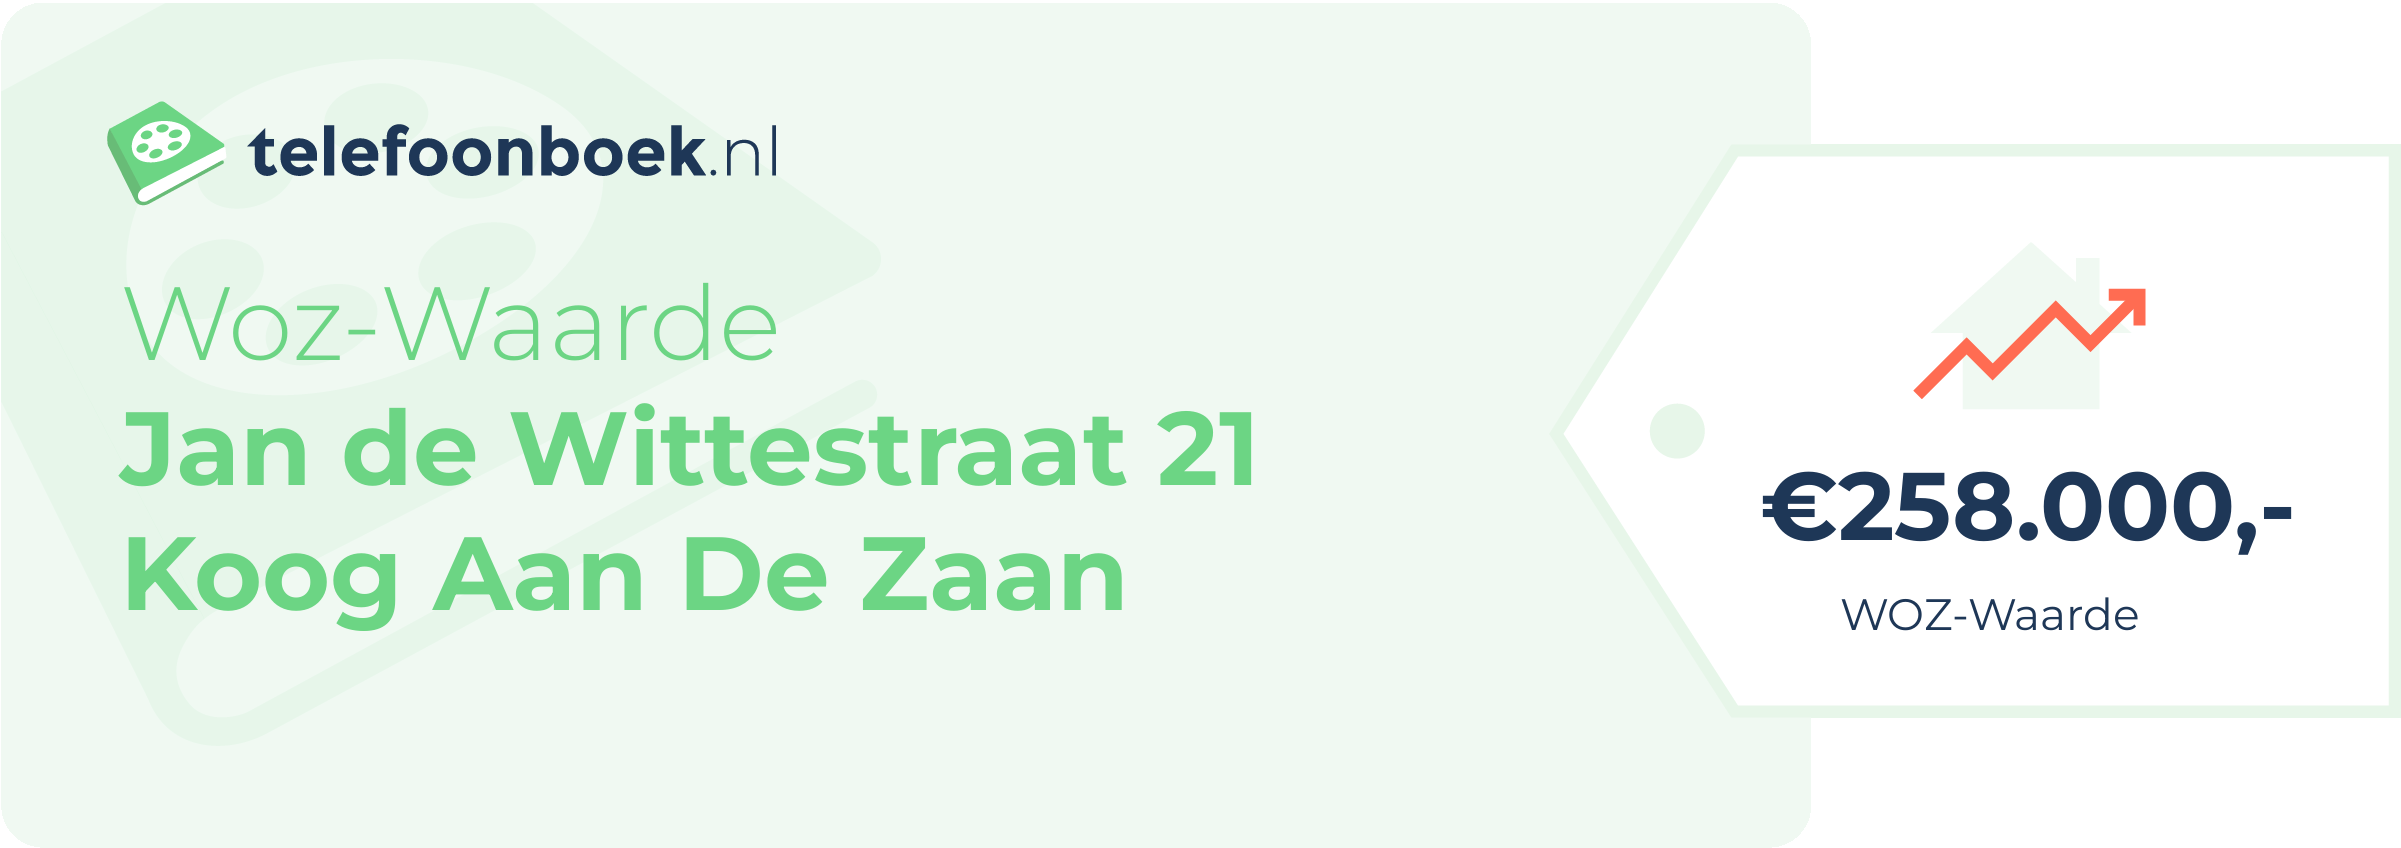 WOZ-waarde Jan De Wittestraat 21 Koog Aan De Zaan